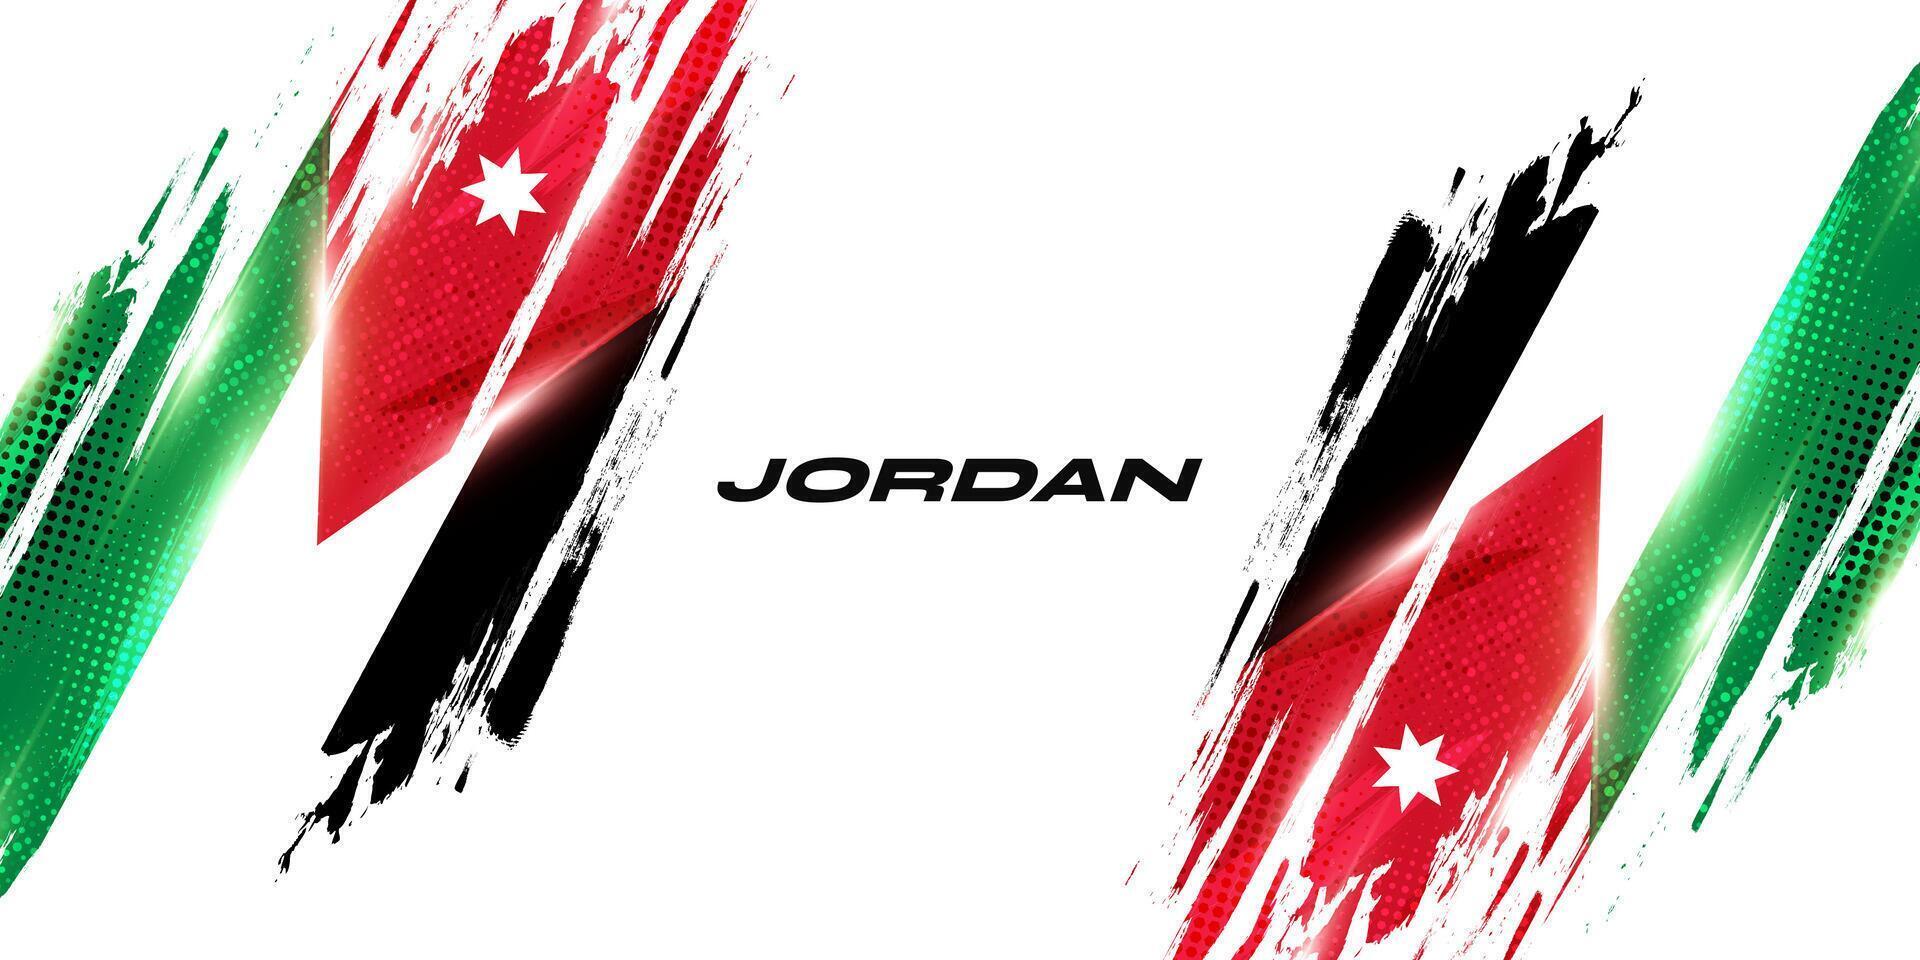 Jordânia bandeira dentro escova pintura estilo com meio-tom efeito. nacional bandeira do Jordânia com grunge escova conceito vetor